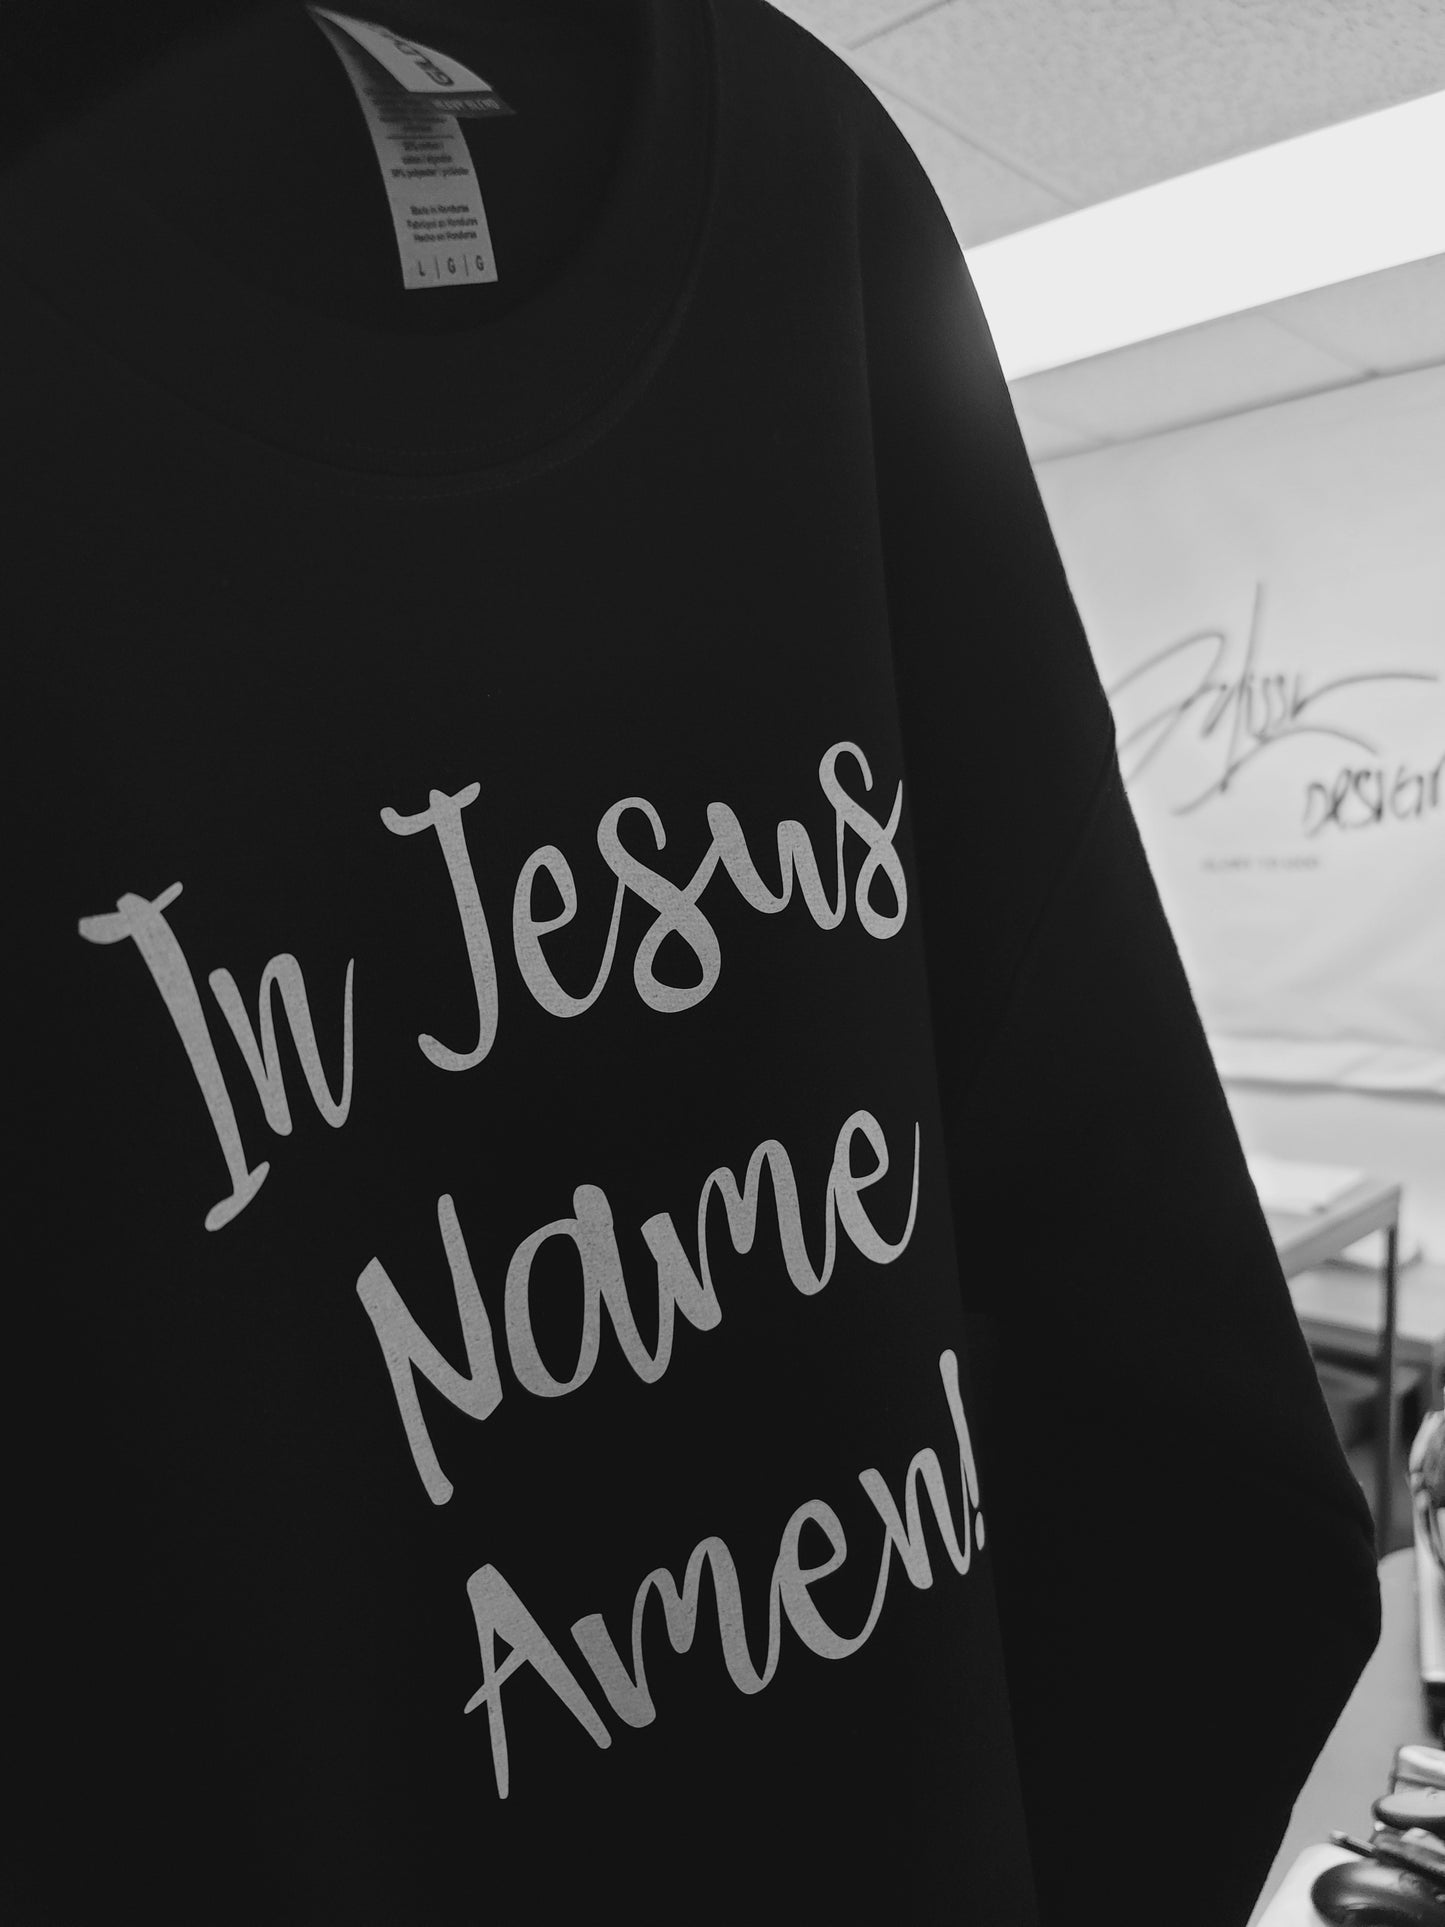 In Jesus name Black crew neck sweatshirt